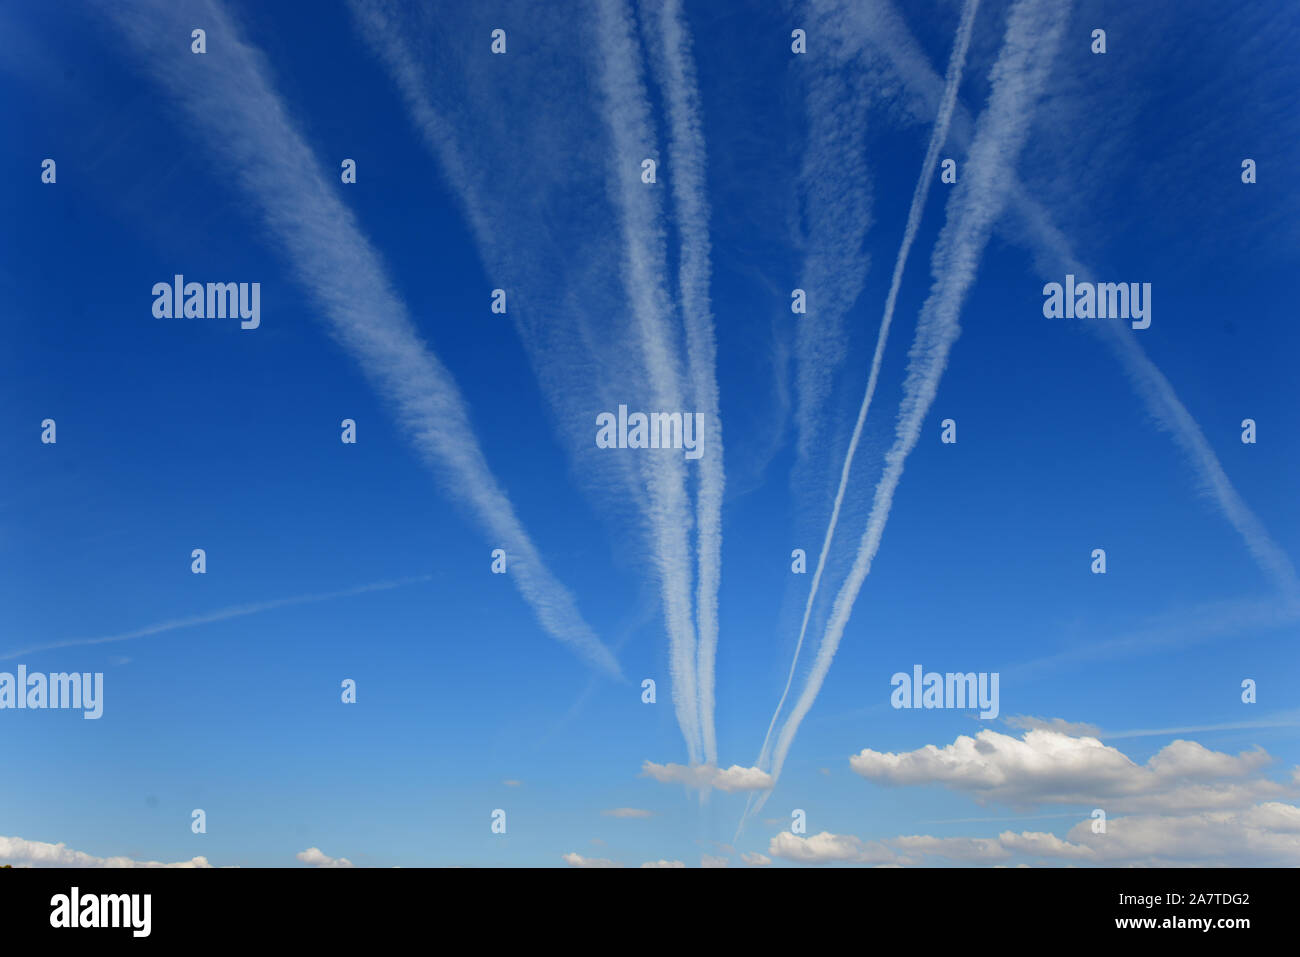 Des traînées de vapeur, les traînées de condensation, sentiers, Line-Shaped Homogenitus ou nuages convergeant vers le point de fuite dans le ciel bleu Banque D'Images